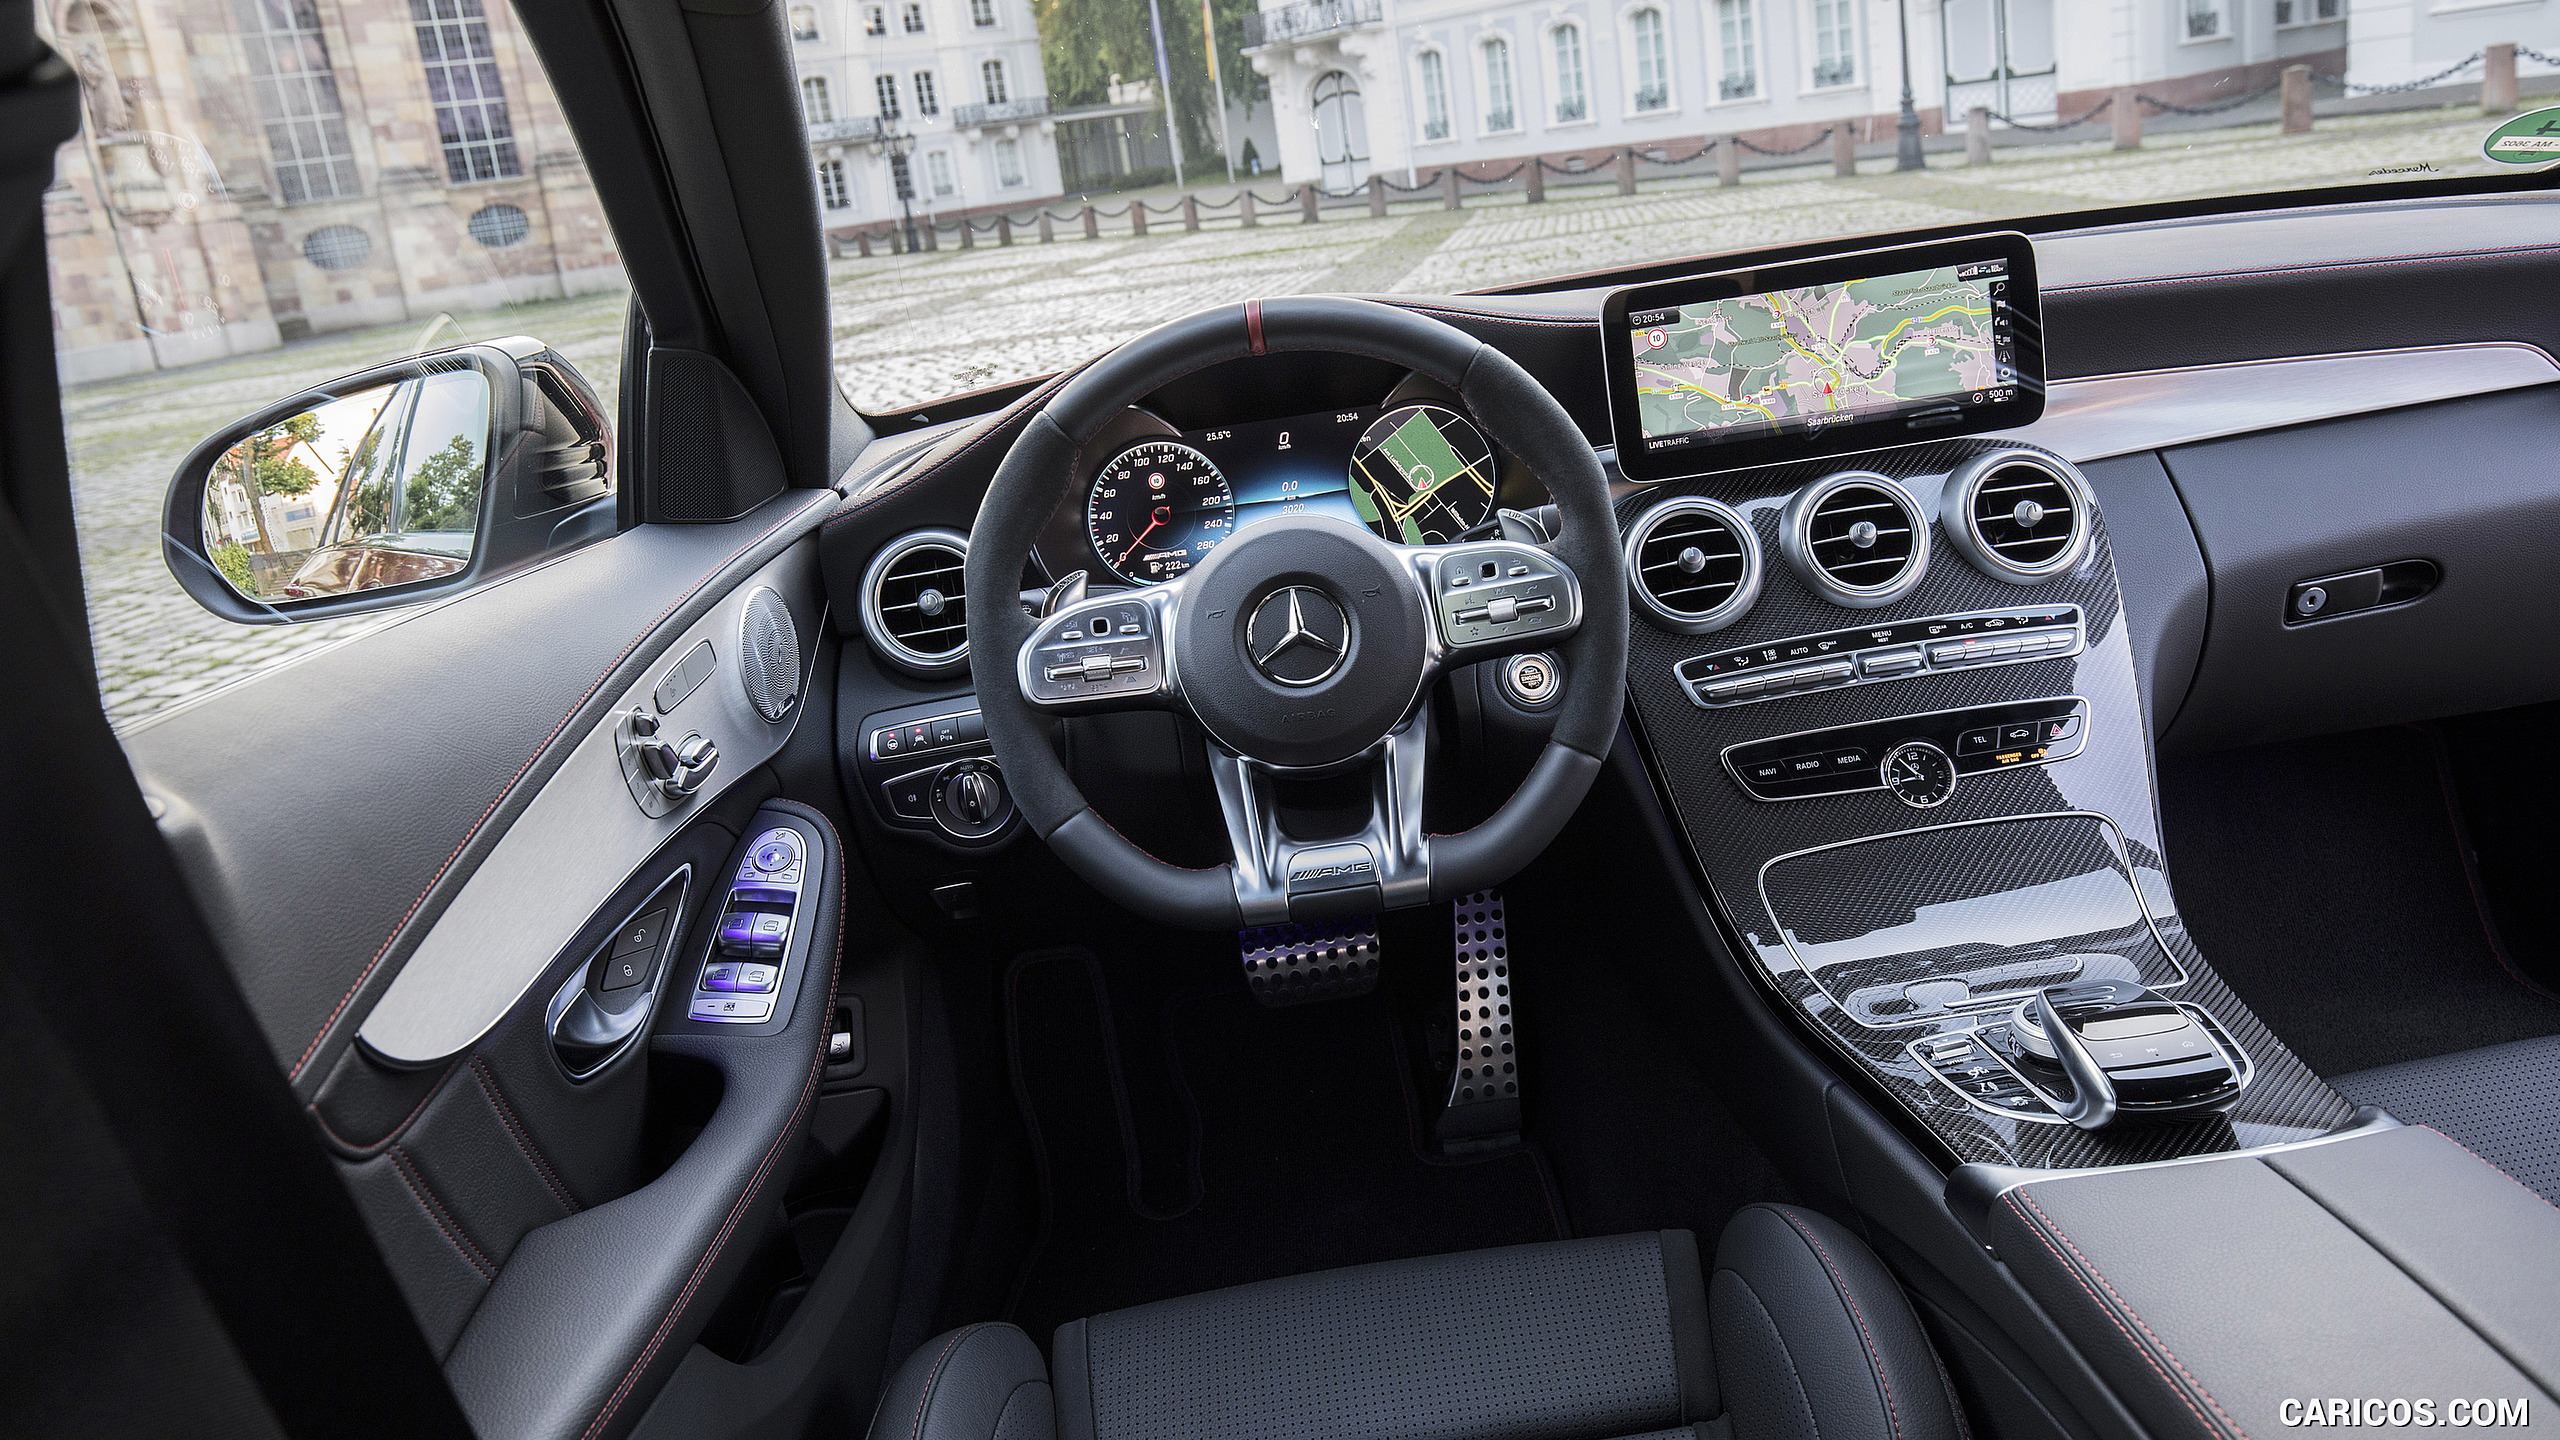 2019 Mercedes-AMG C43 4MATIC Sedan - Interior, Cockpit, #100 of 192